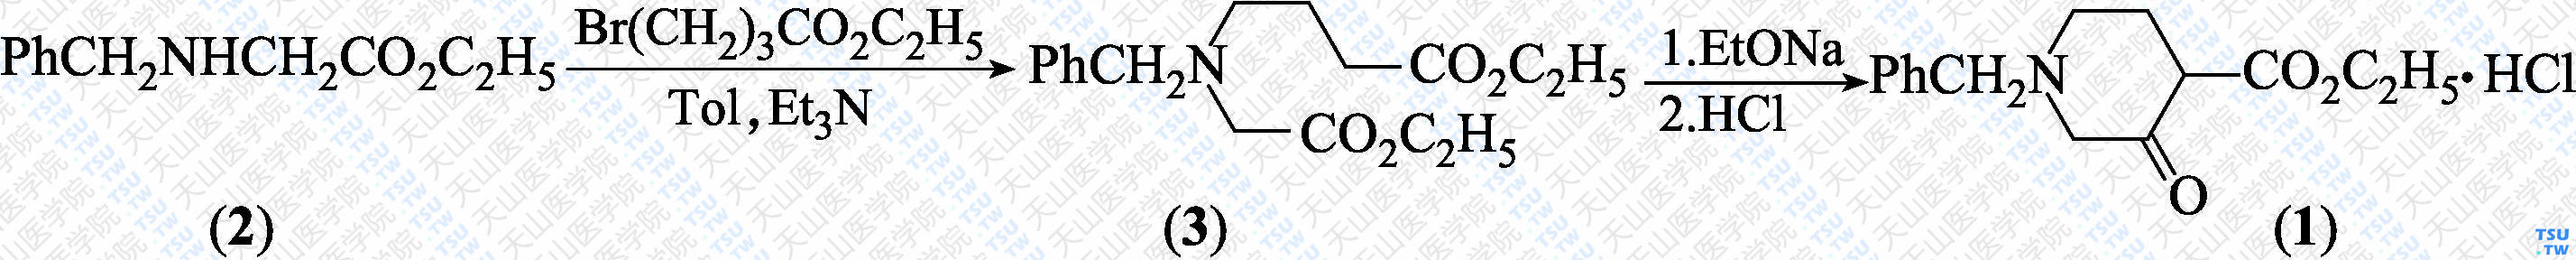 1-苄基-3-氧代-4-哌啶甲酸乙酯盐酸盐（分子式：C<sub>15</sub>H<sub>19</sub>NO<sub>3</sub>·HCl）的合成方法路线及其结构式